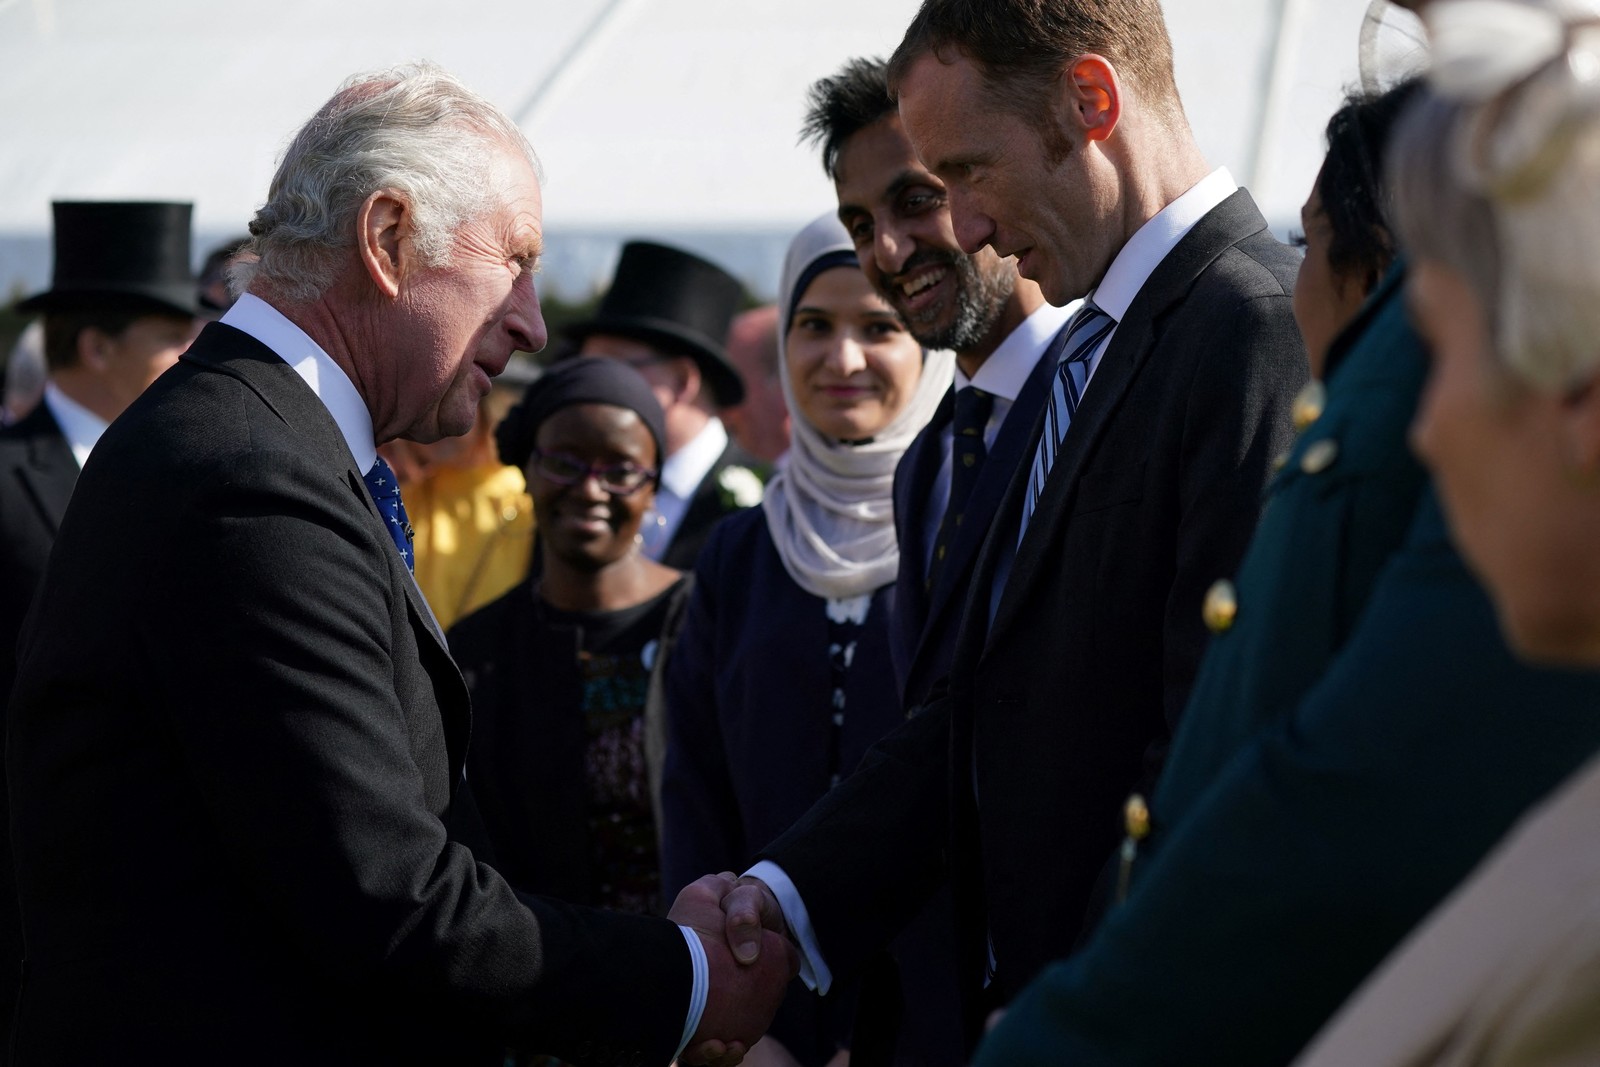 O rei Charles III encontra-se com convidados durante uma recepção no Palácio de Buckingham — Foto: Yui Mok / POOL / AFP